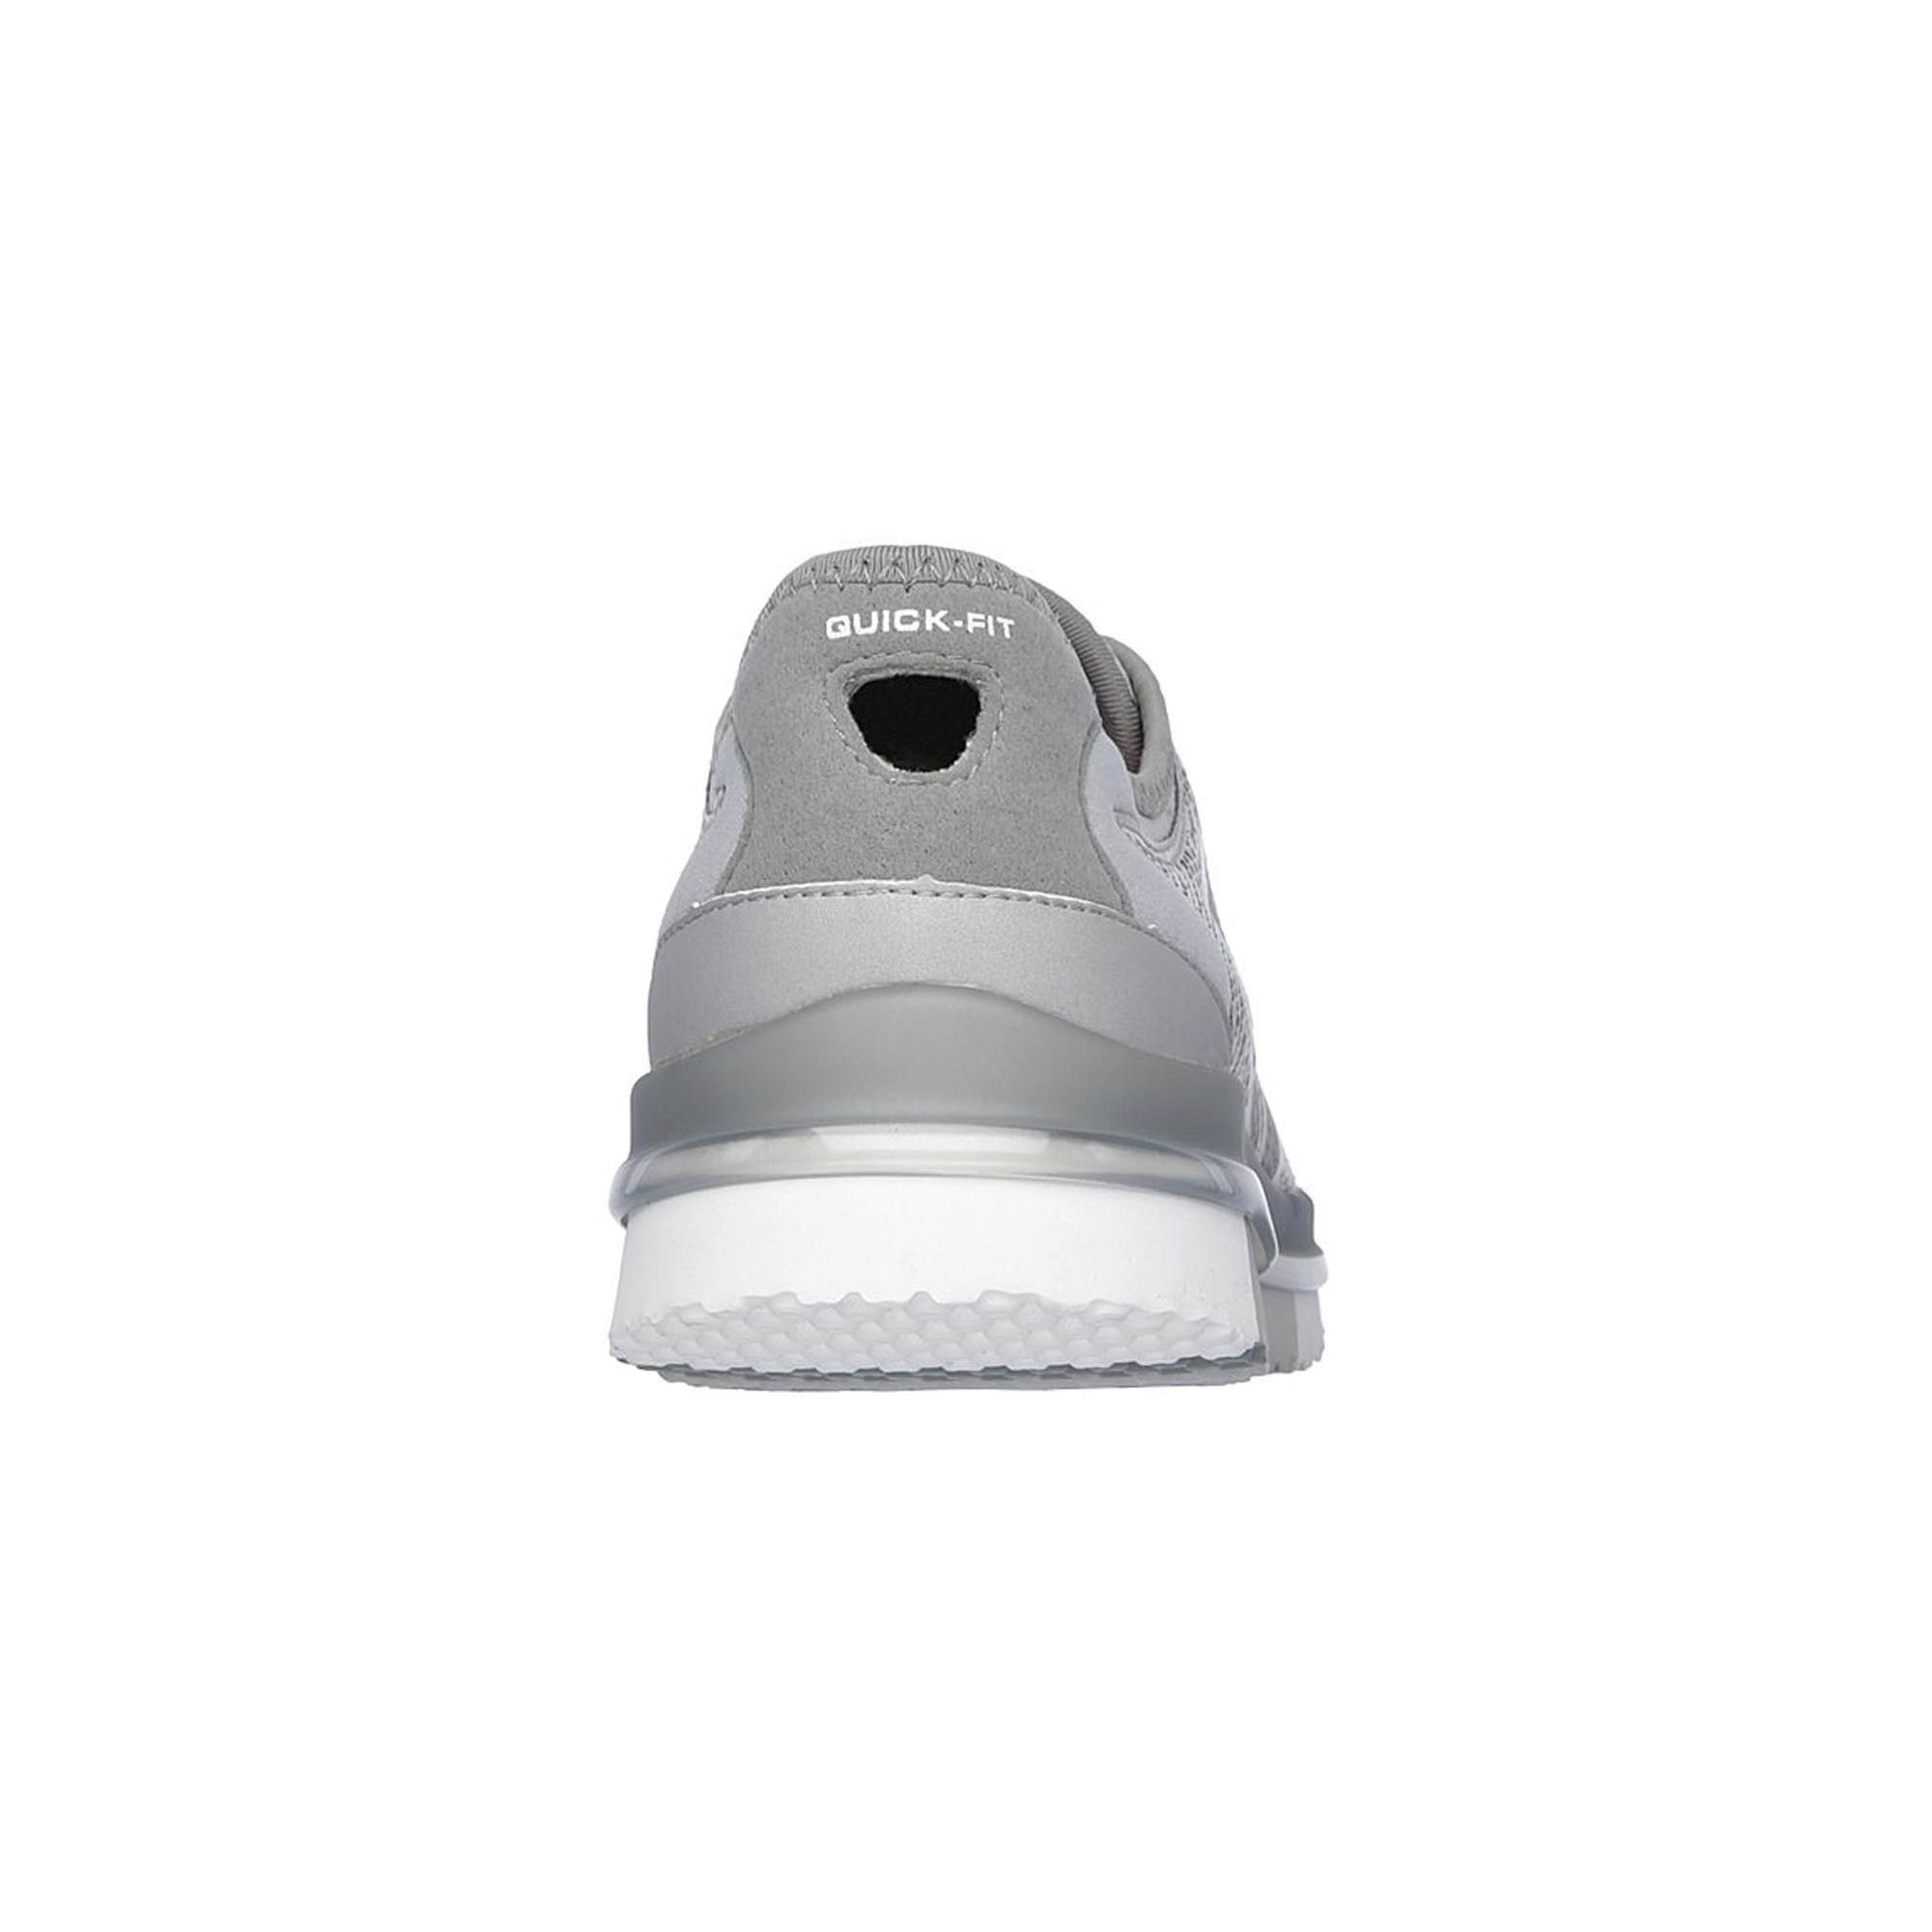 Skechers GO FLEX - Momentum Kadın Spor Ayakkabı Ürün kodu: 014017-O23 |  Etichet Sport